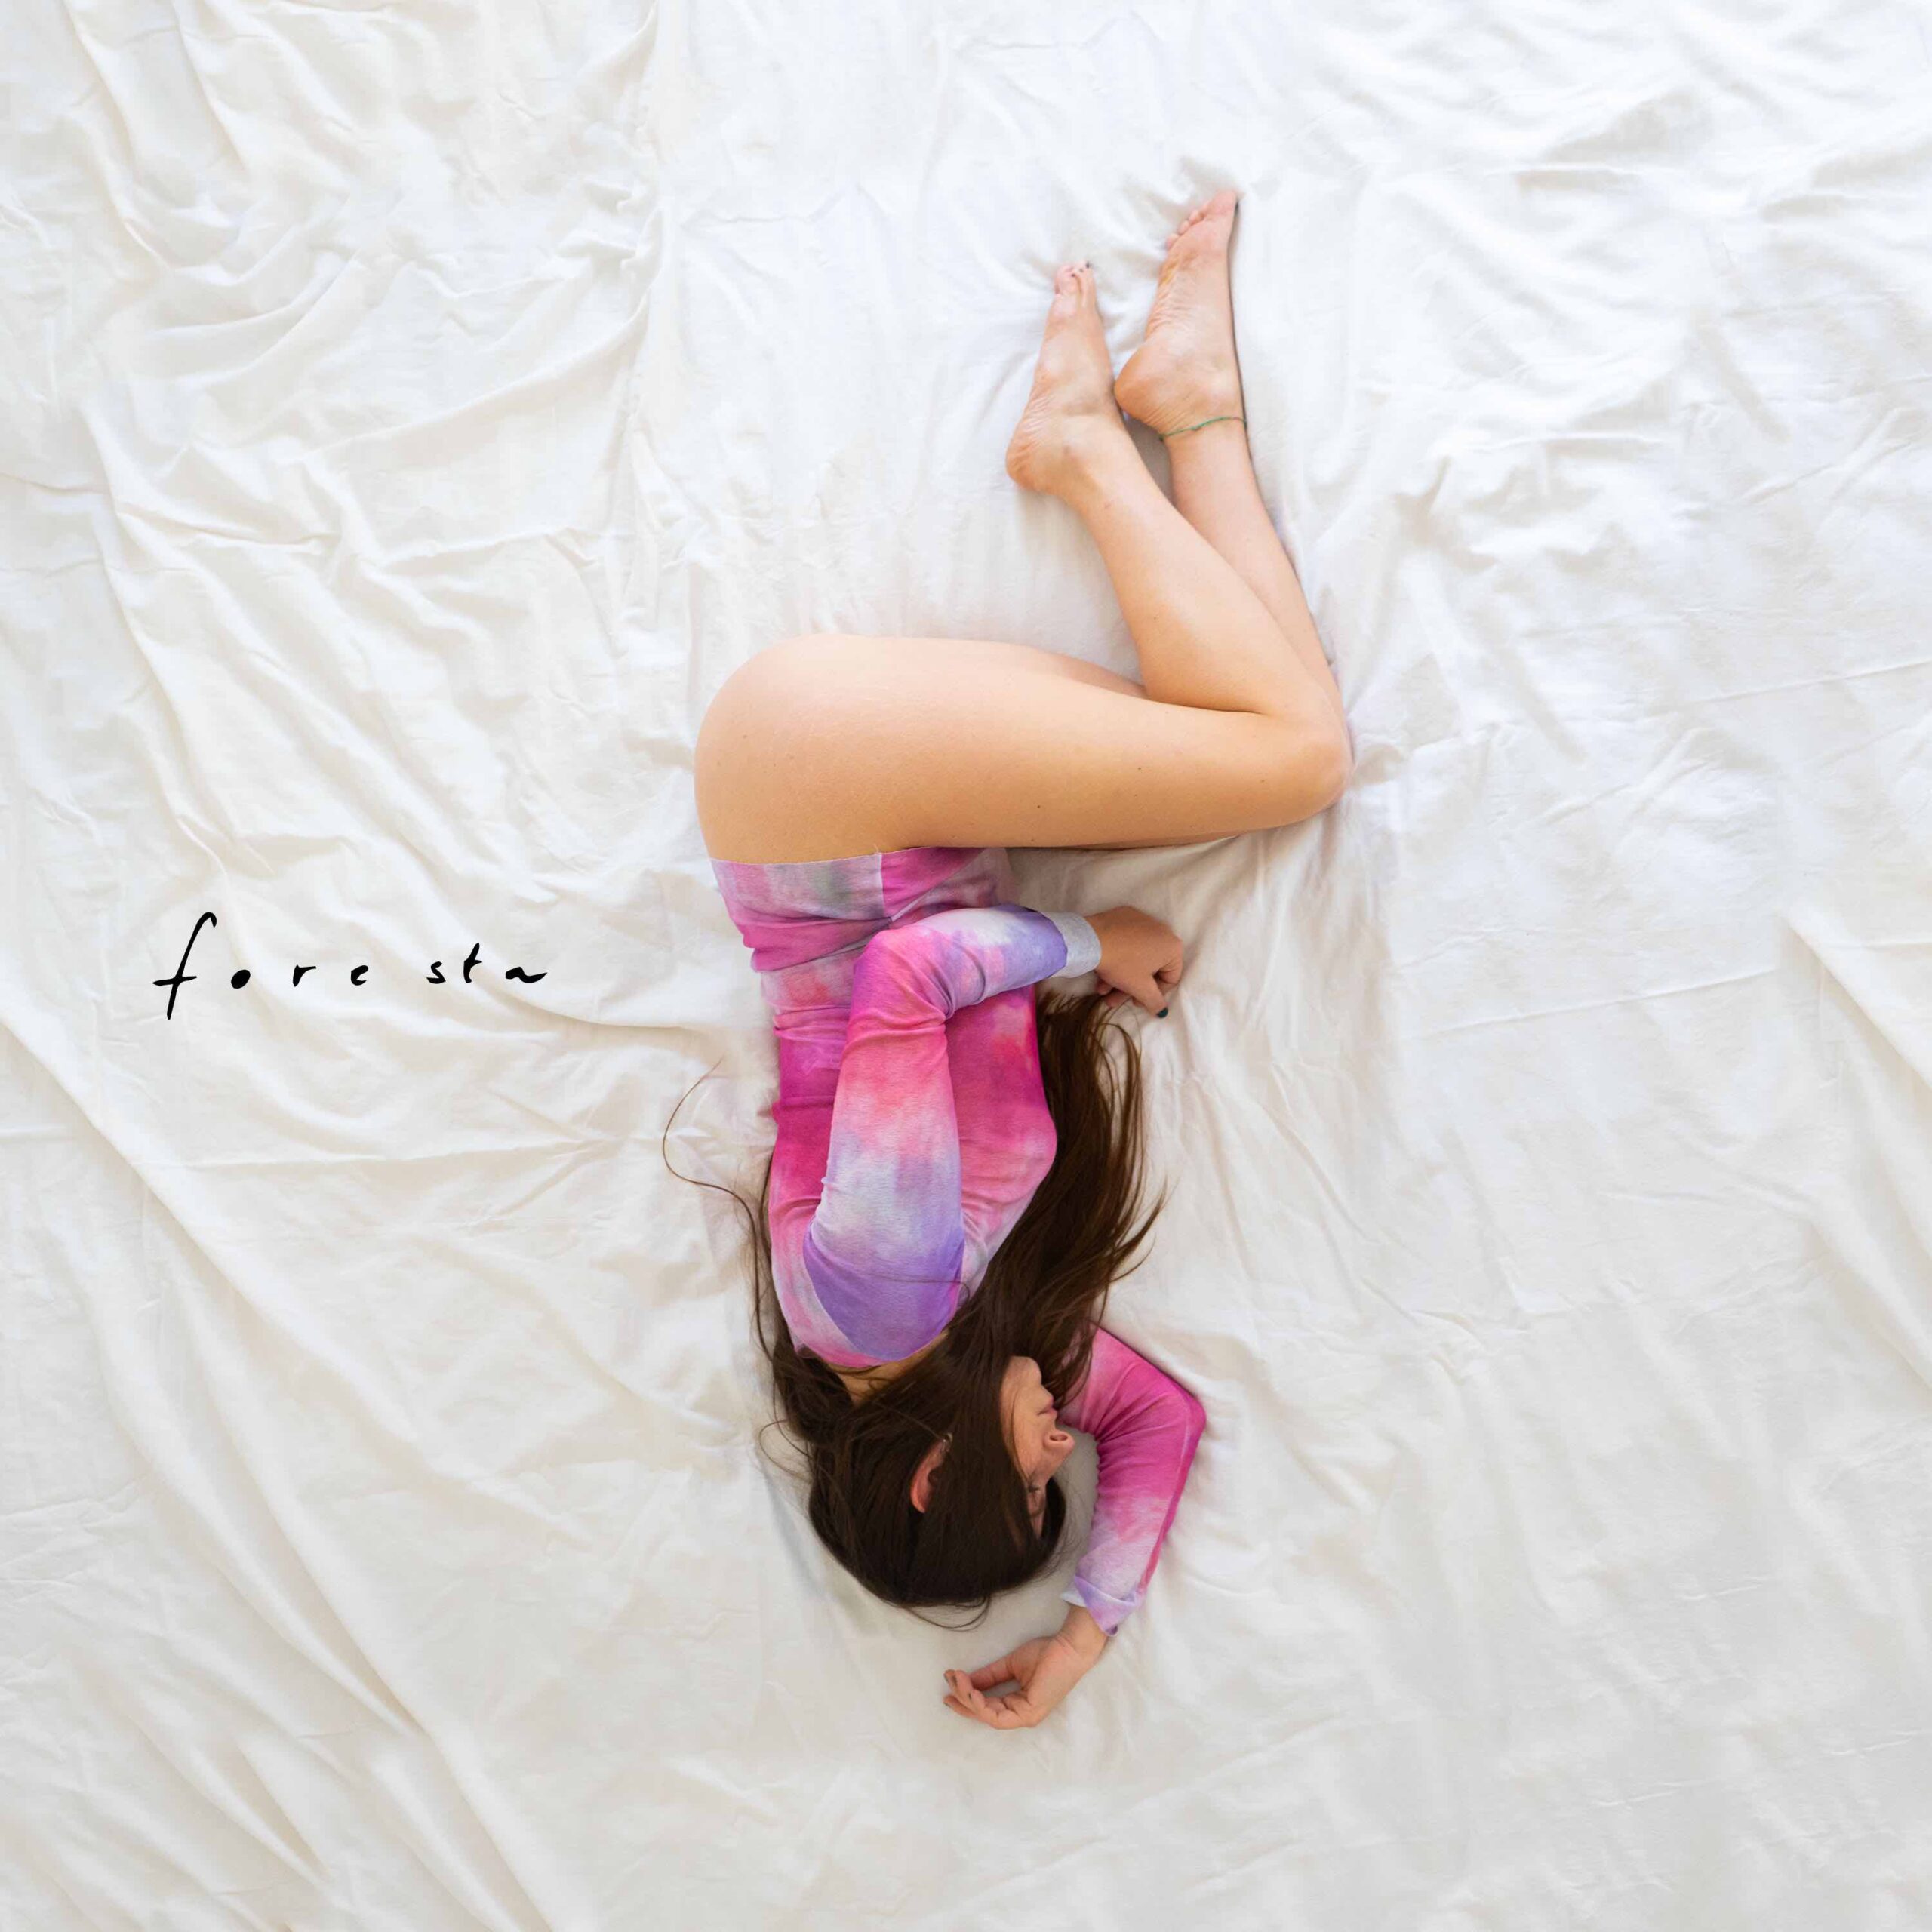 “Foresta”  è il nuovo singolo della cantautrice Anna e L’Appartamento